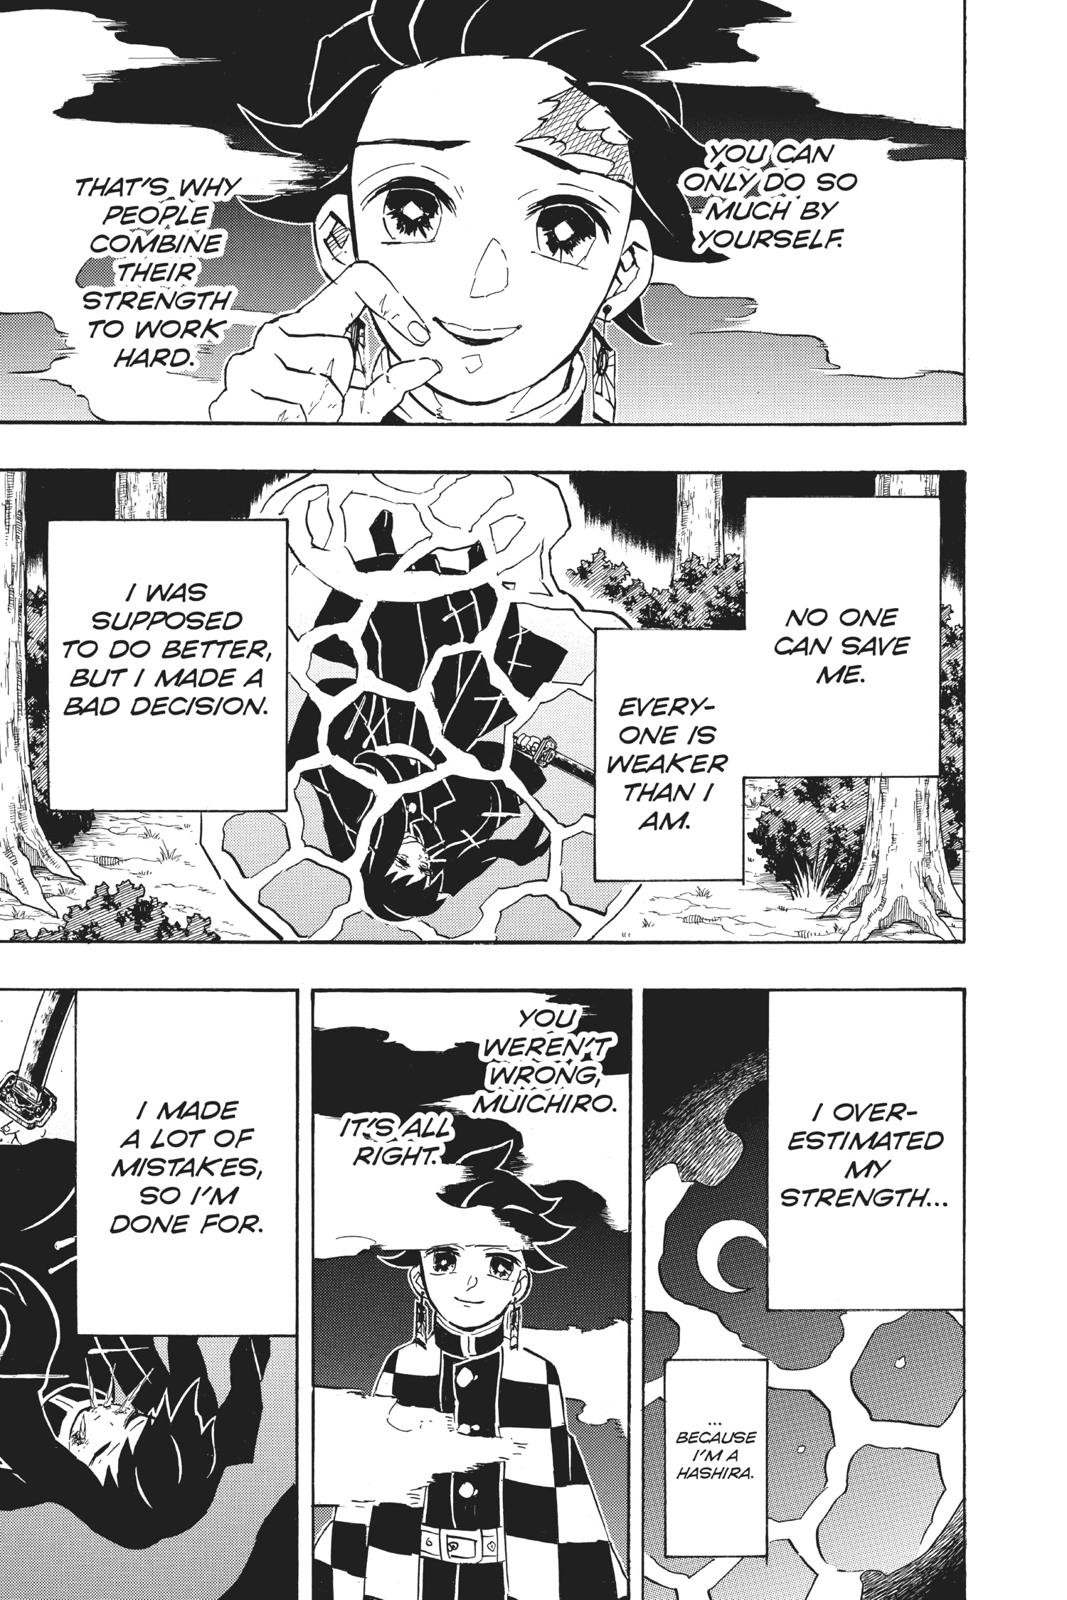 Demon Slayer Manga Manga Chapter - 117 - image 5